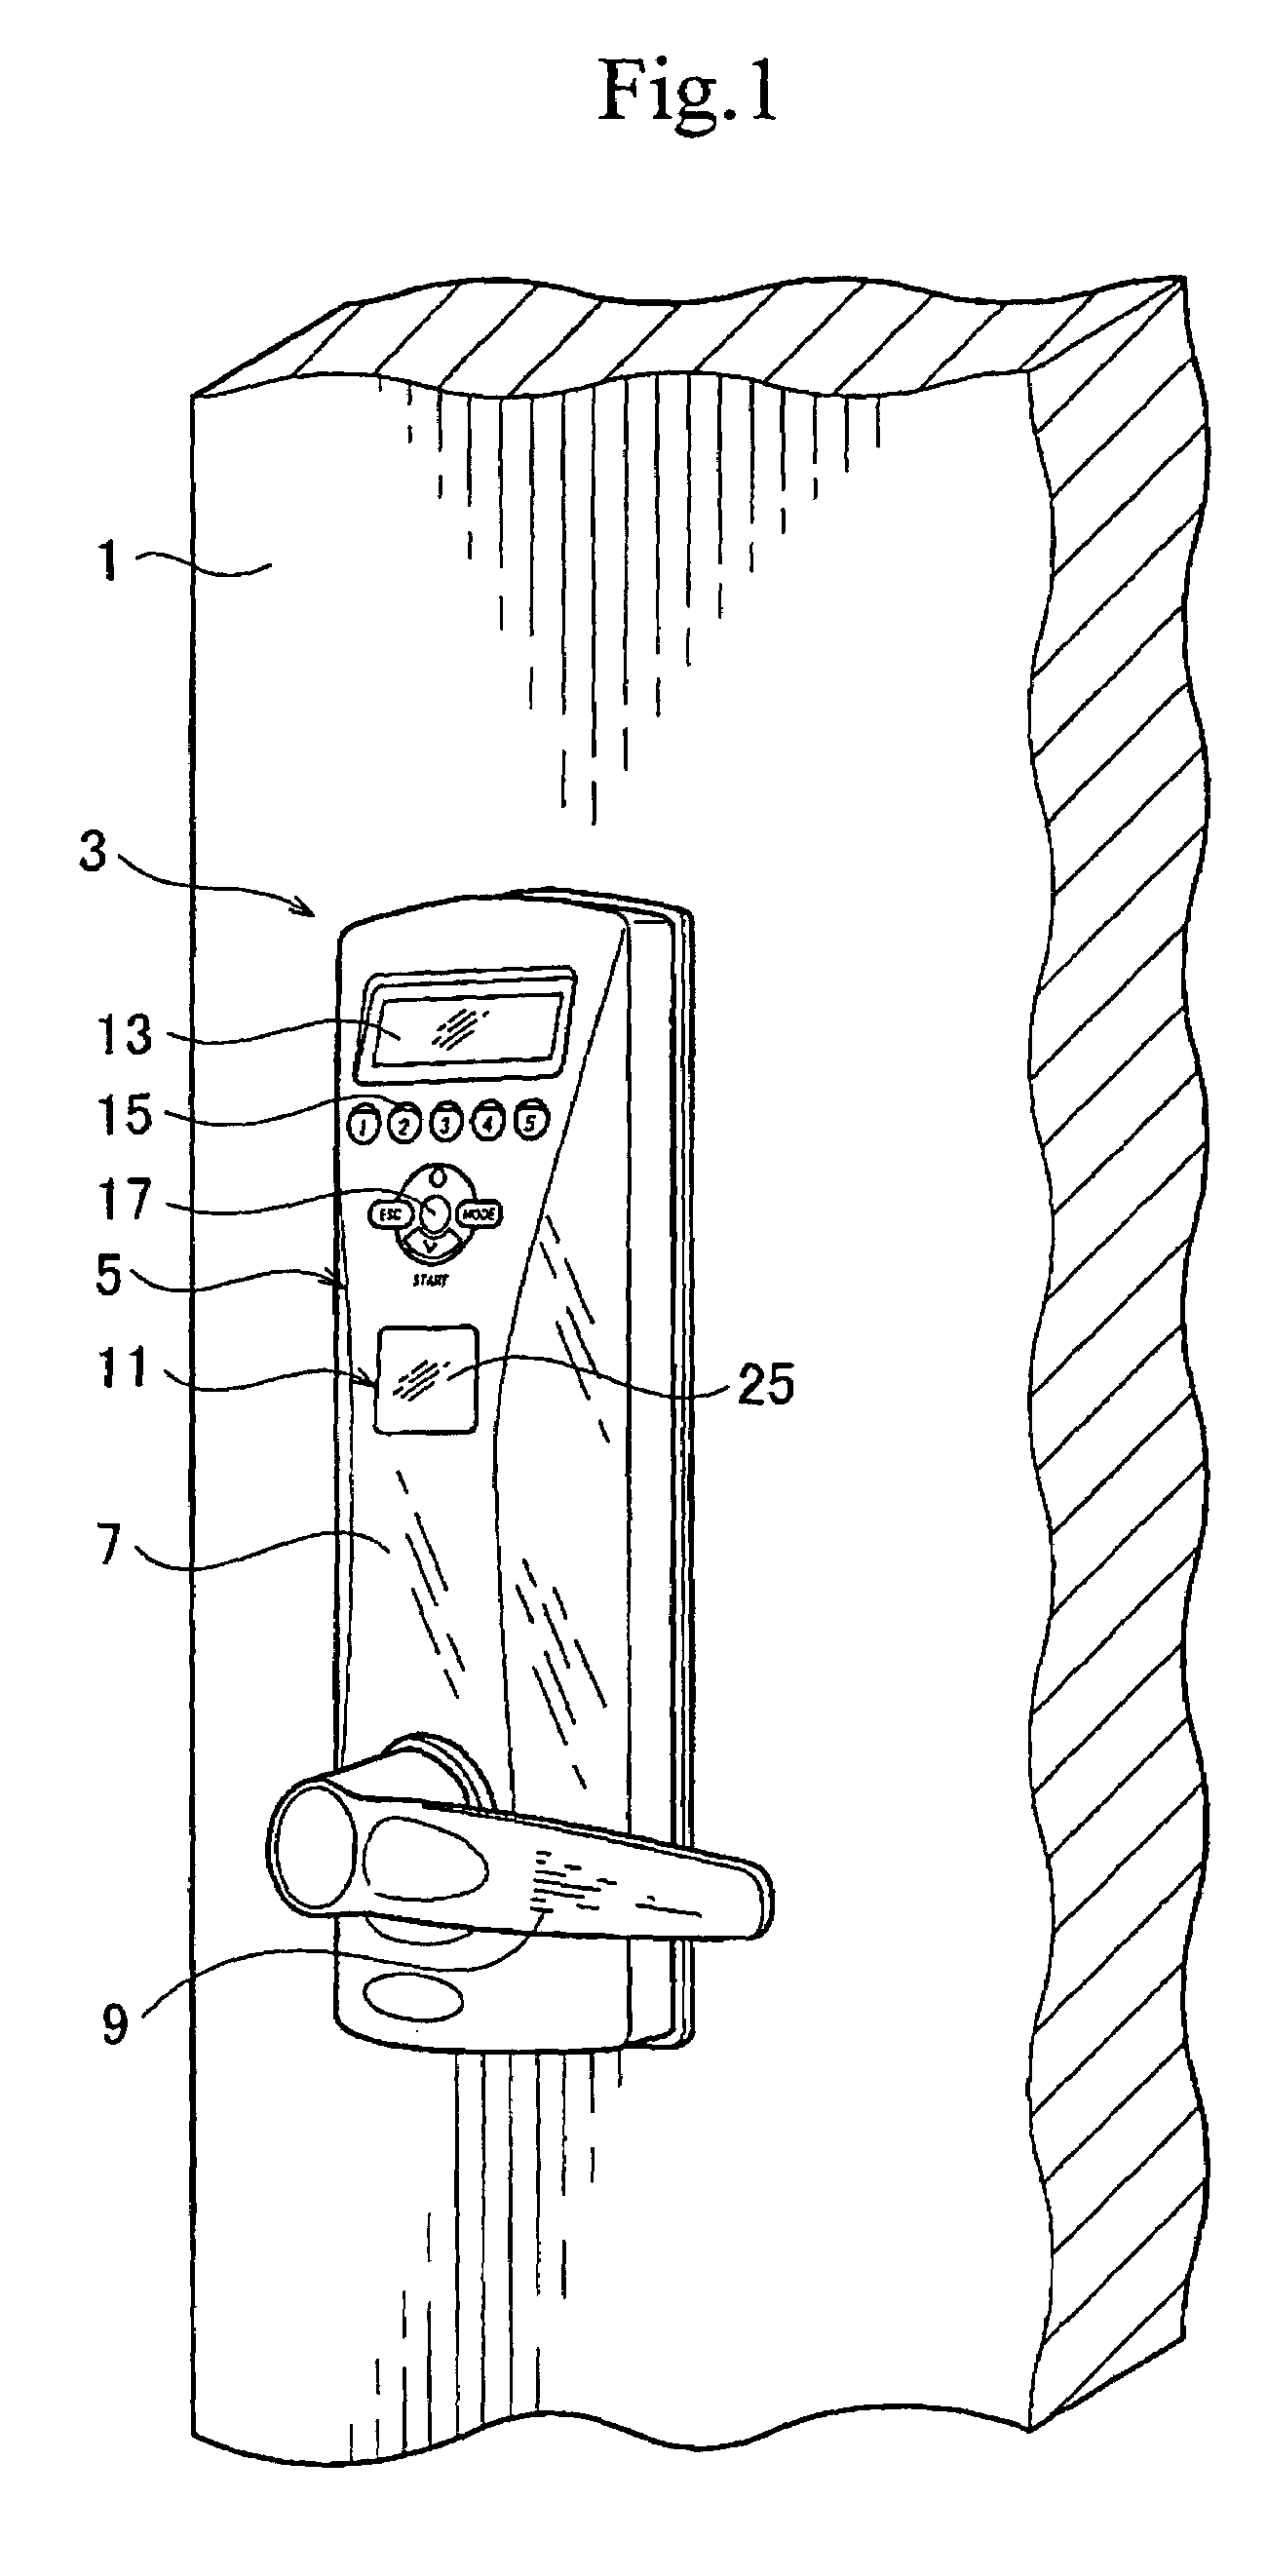 Locking apparatus